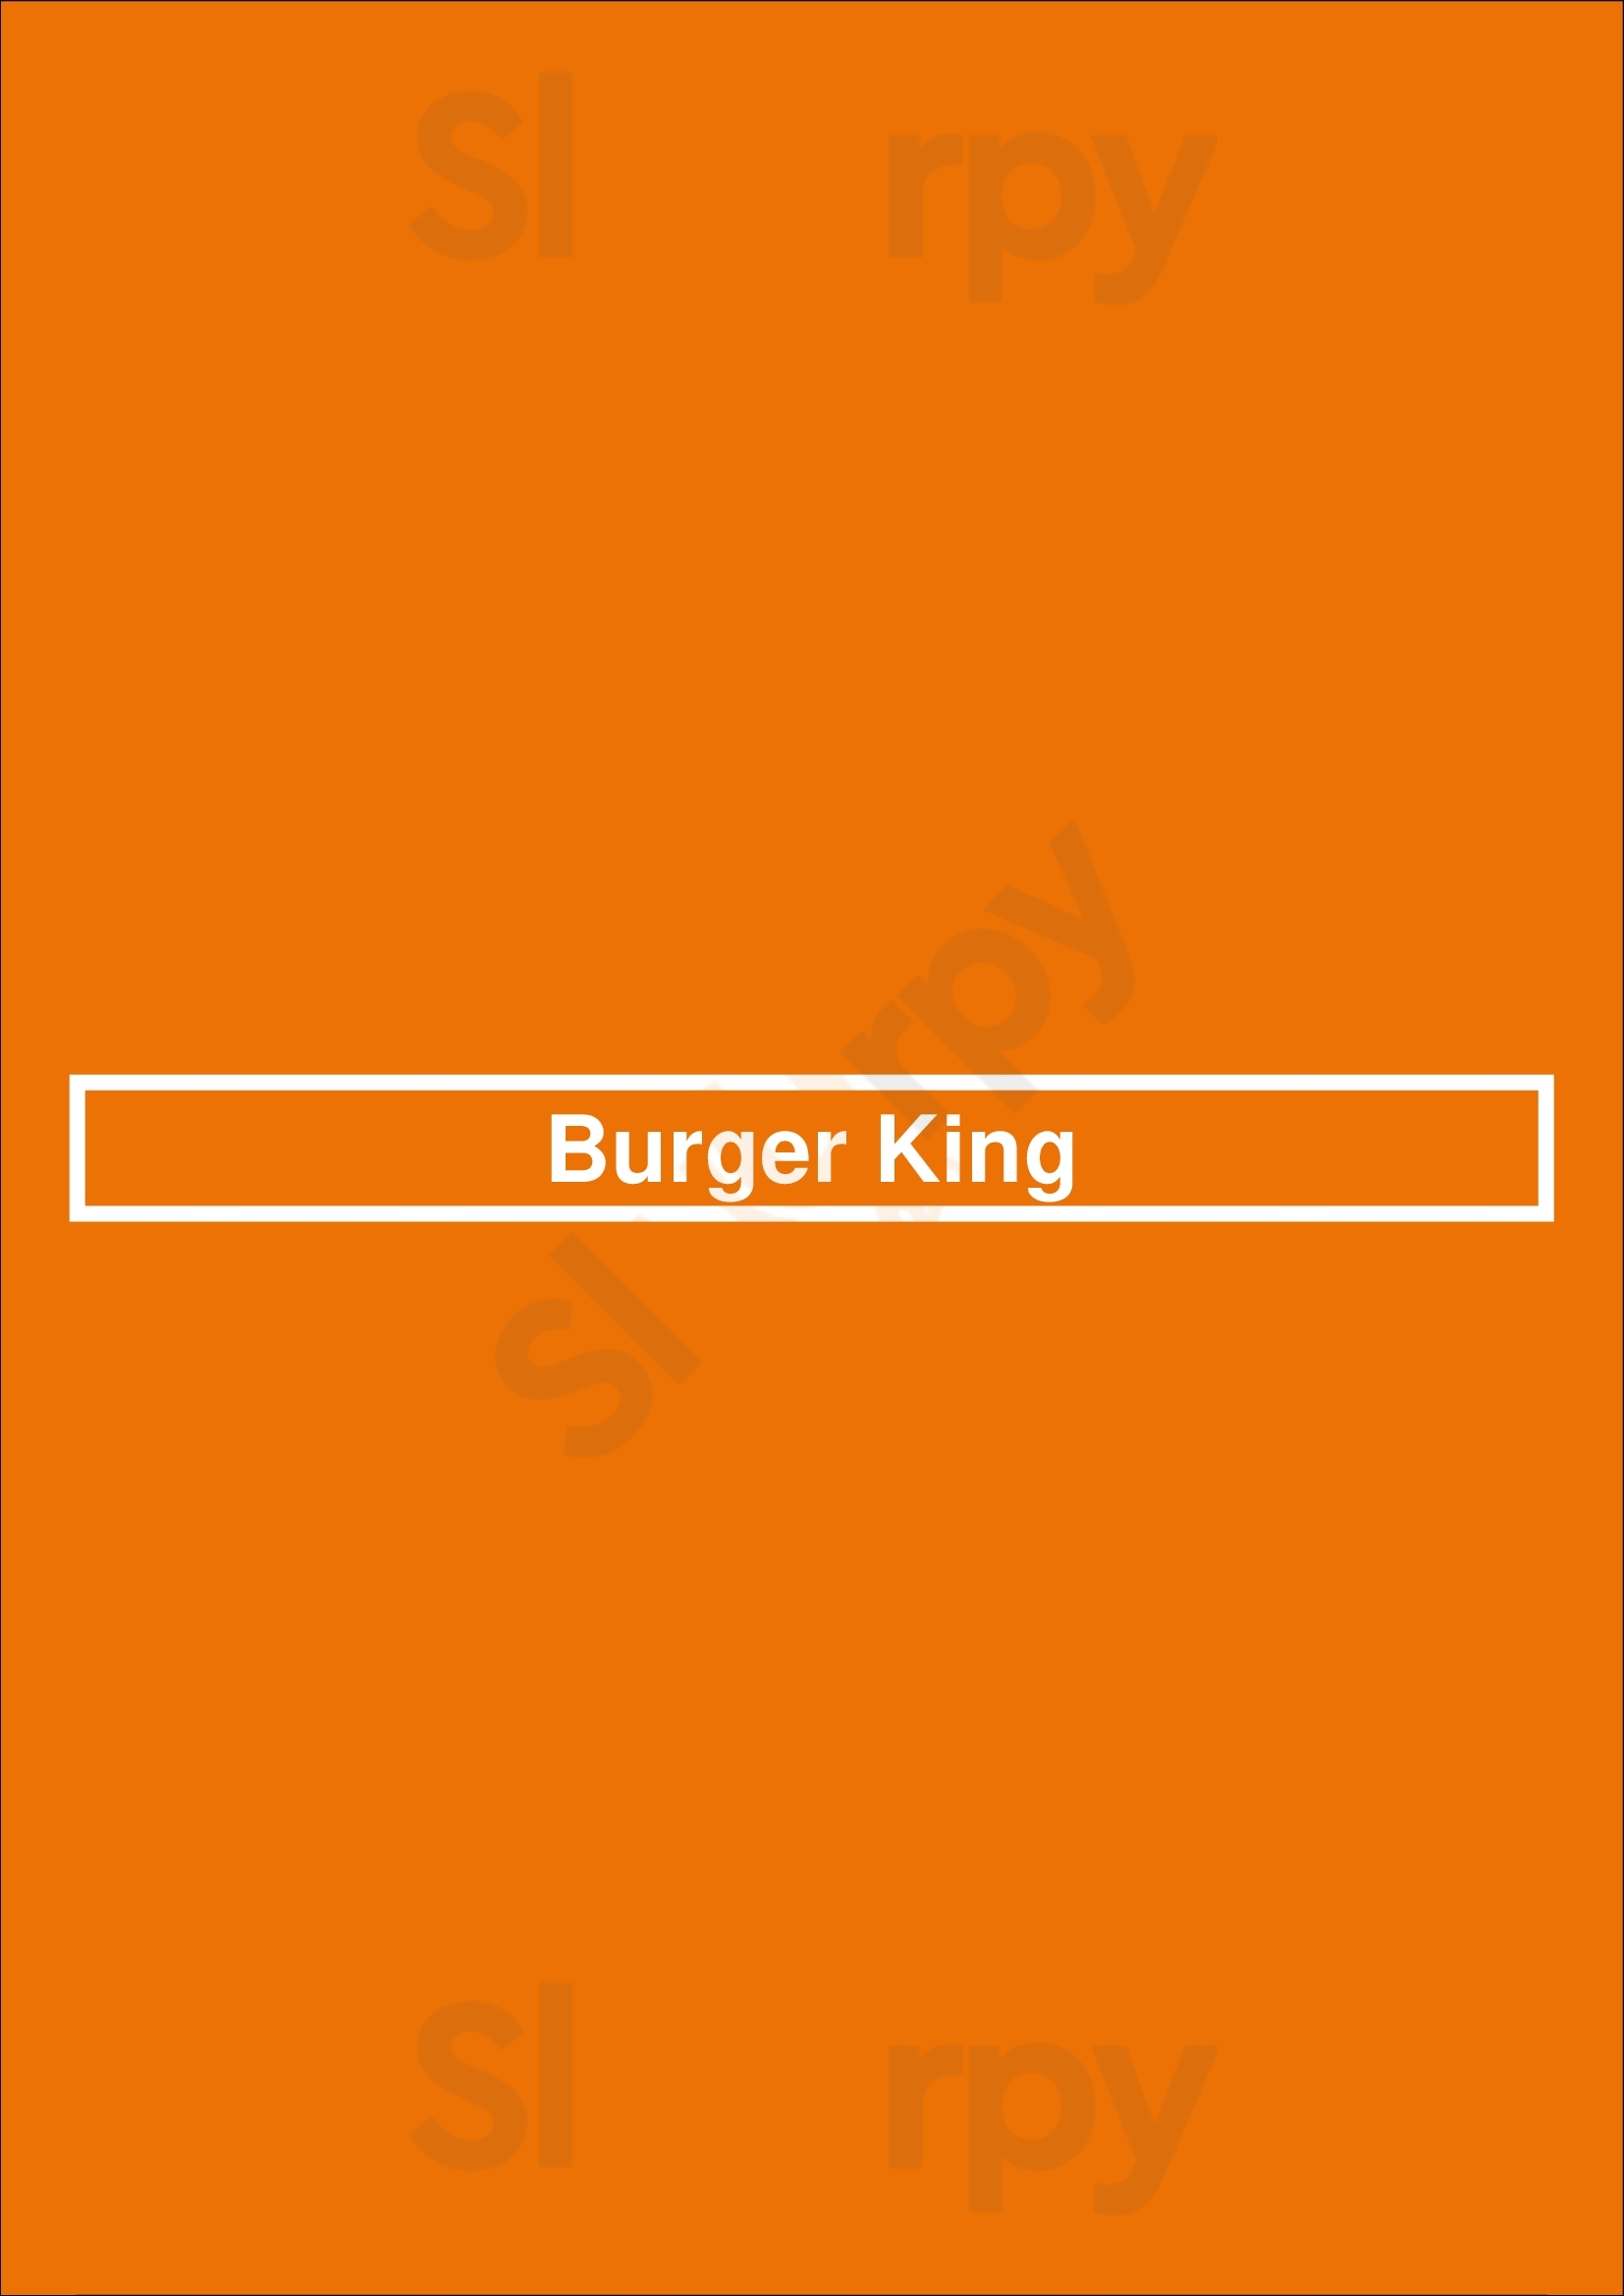 Burger King Chicago Menu - 1